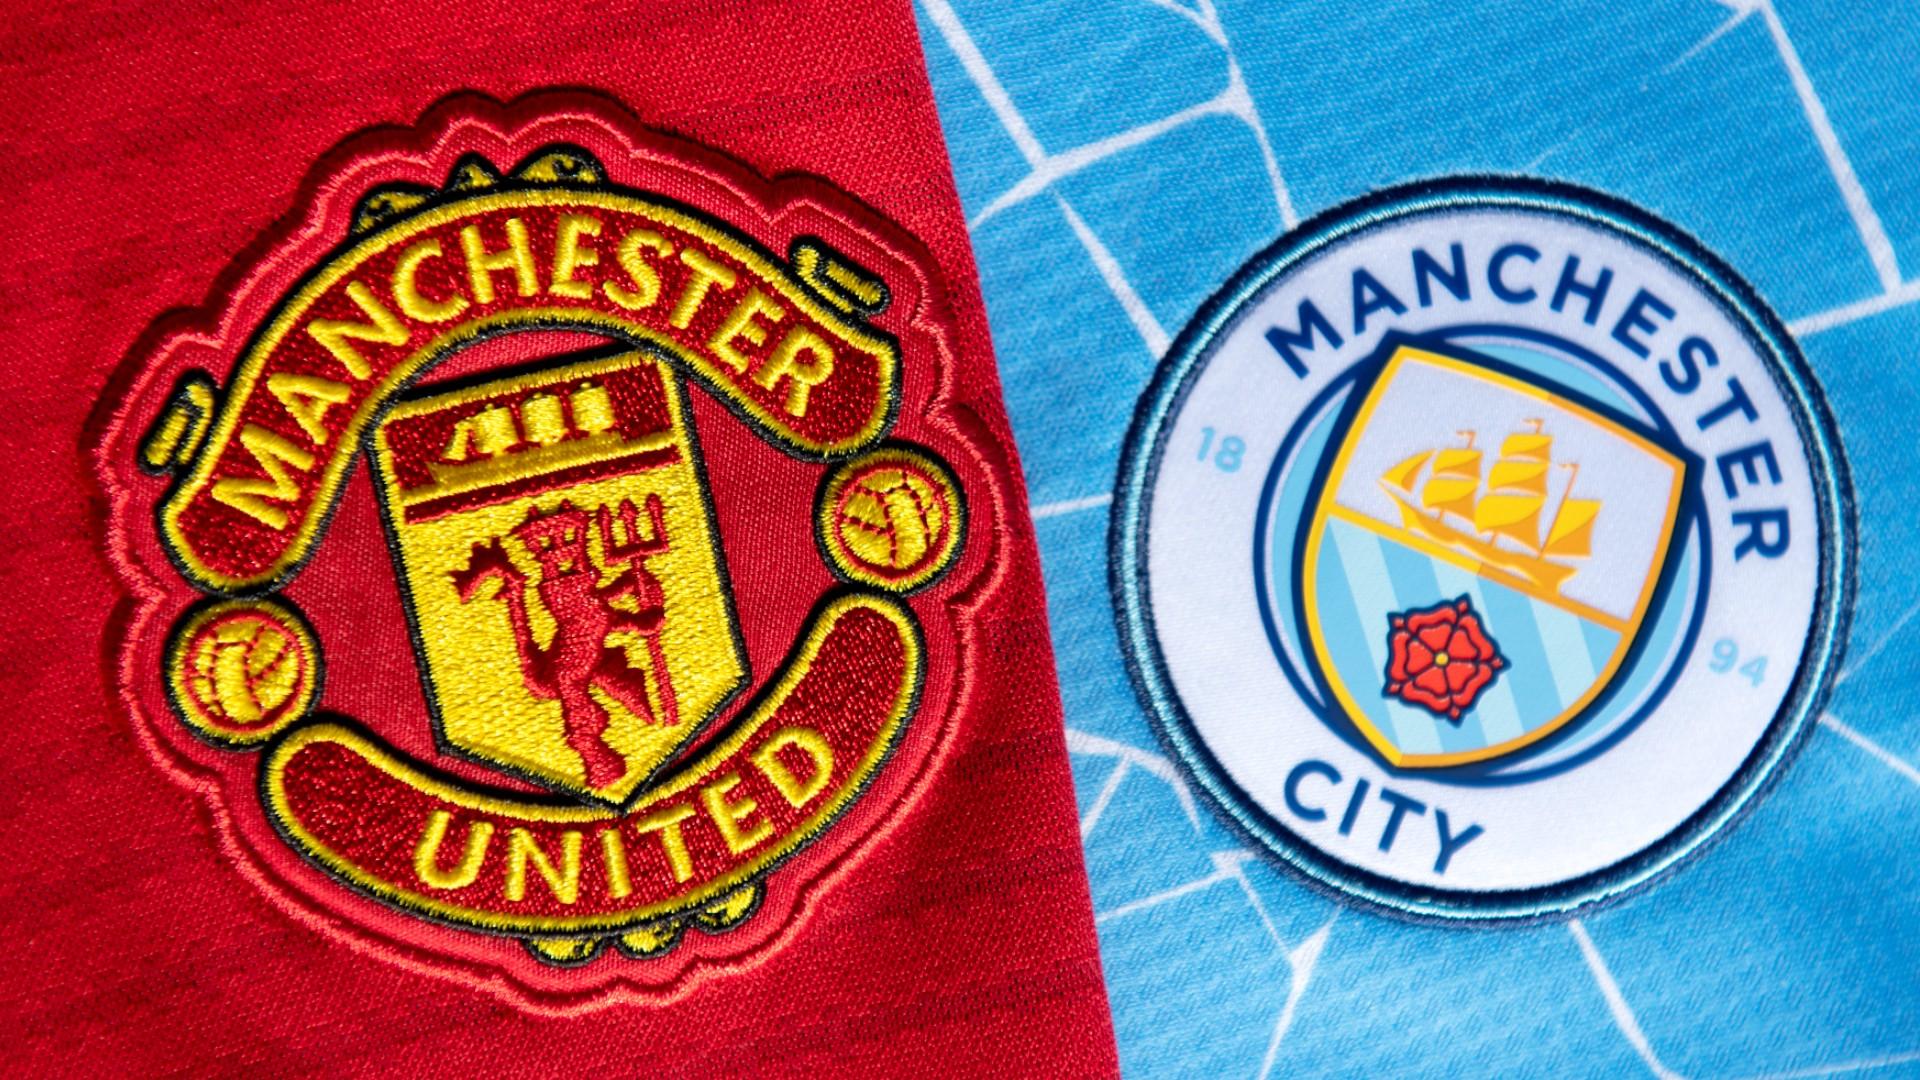 Derby de Manchester, CITY vs UNITED | Premier League